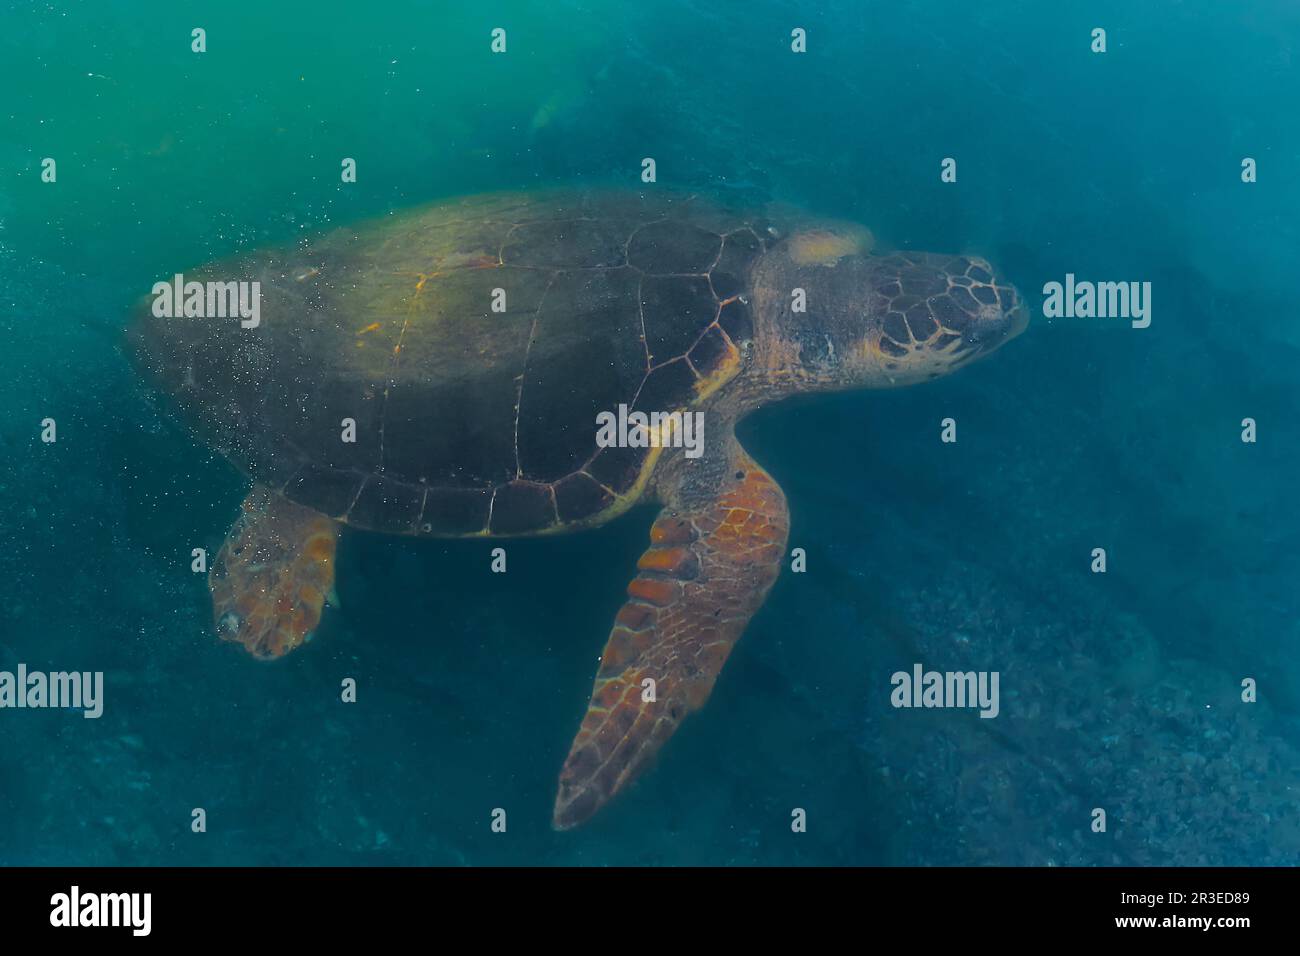 Meeresschildkröten, die Algen auf dem Meeresboden in der Nähe der Küste fressen, Tiere des mittelmeers. Schildkröte – Caretta caretta selektiver Fokus Stockfoto